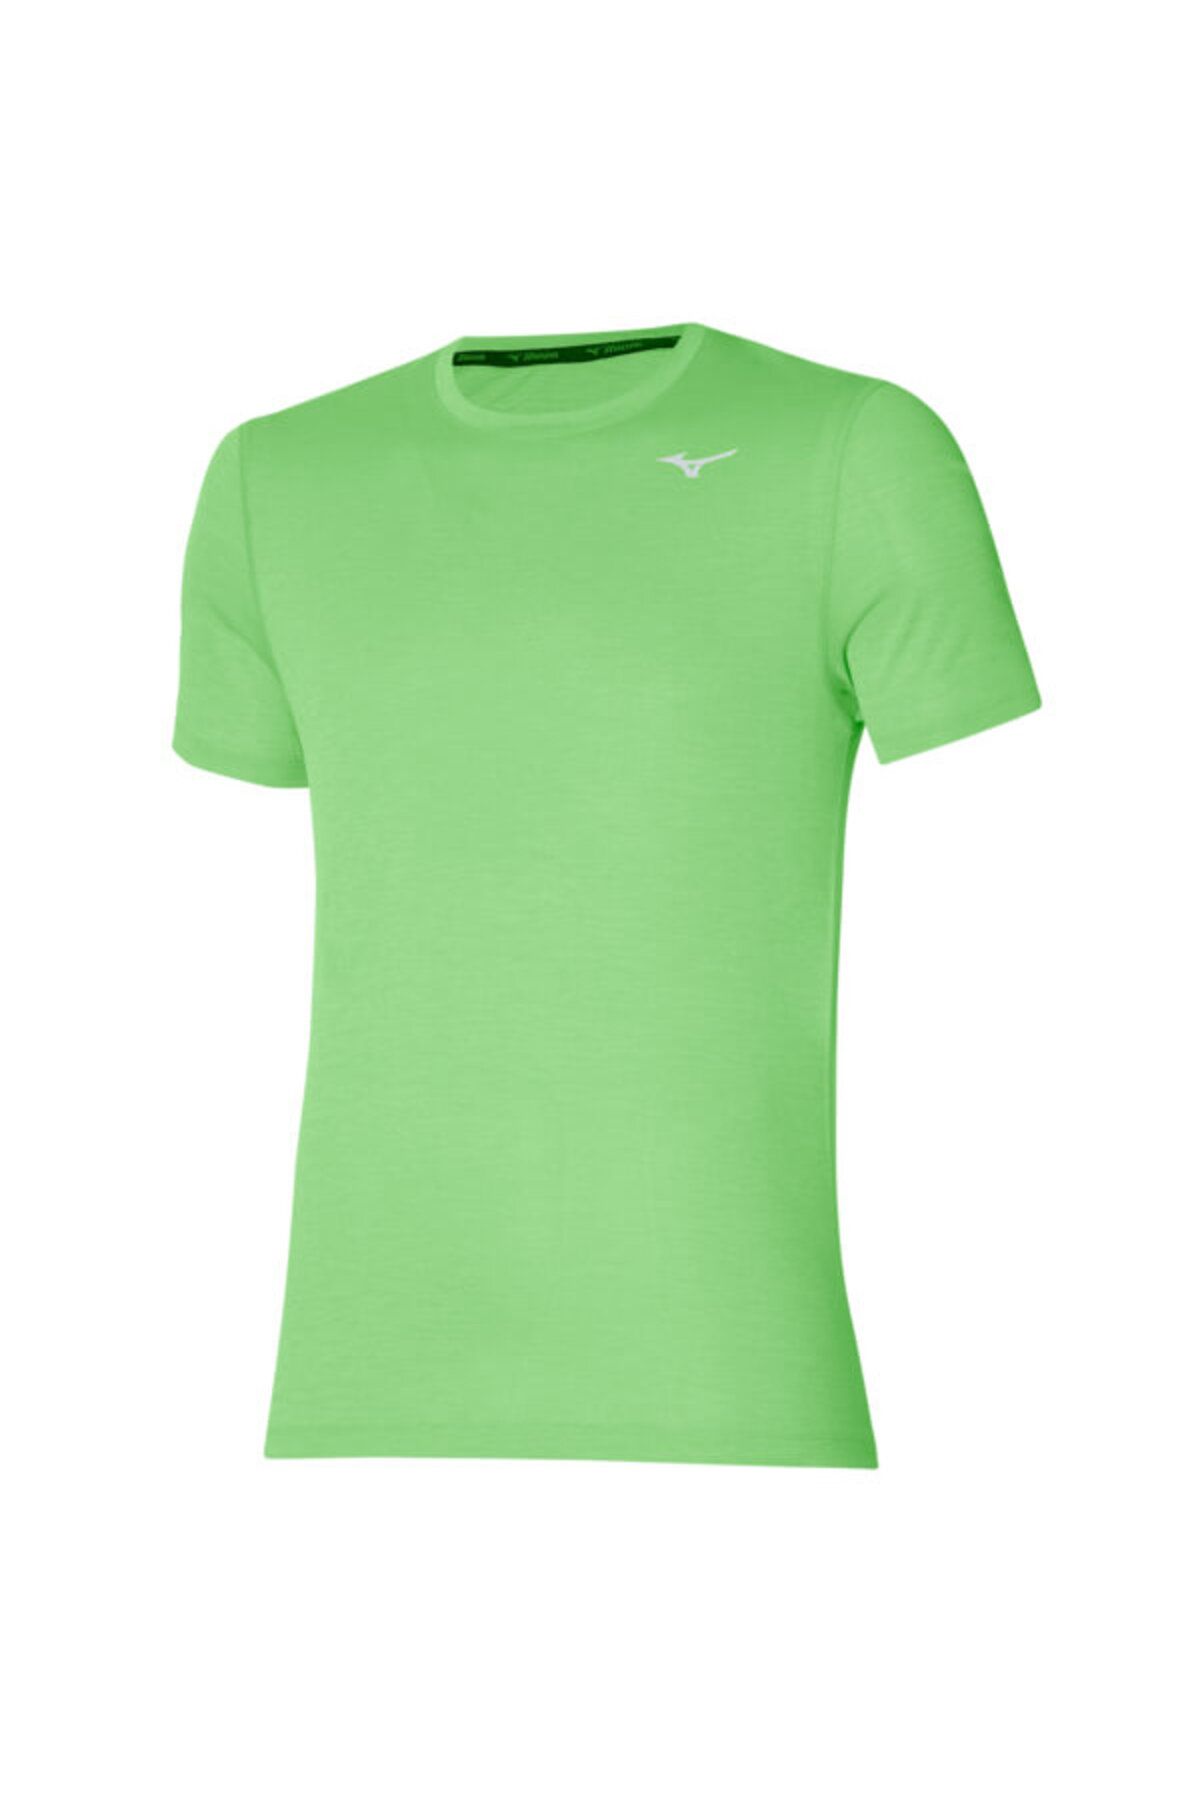 Mizuno Impulse Core Erkek Tişört Yeşil